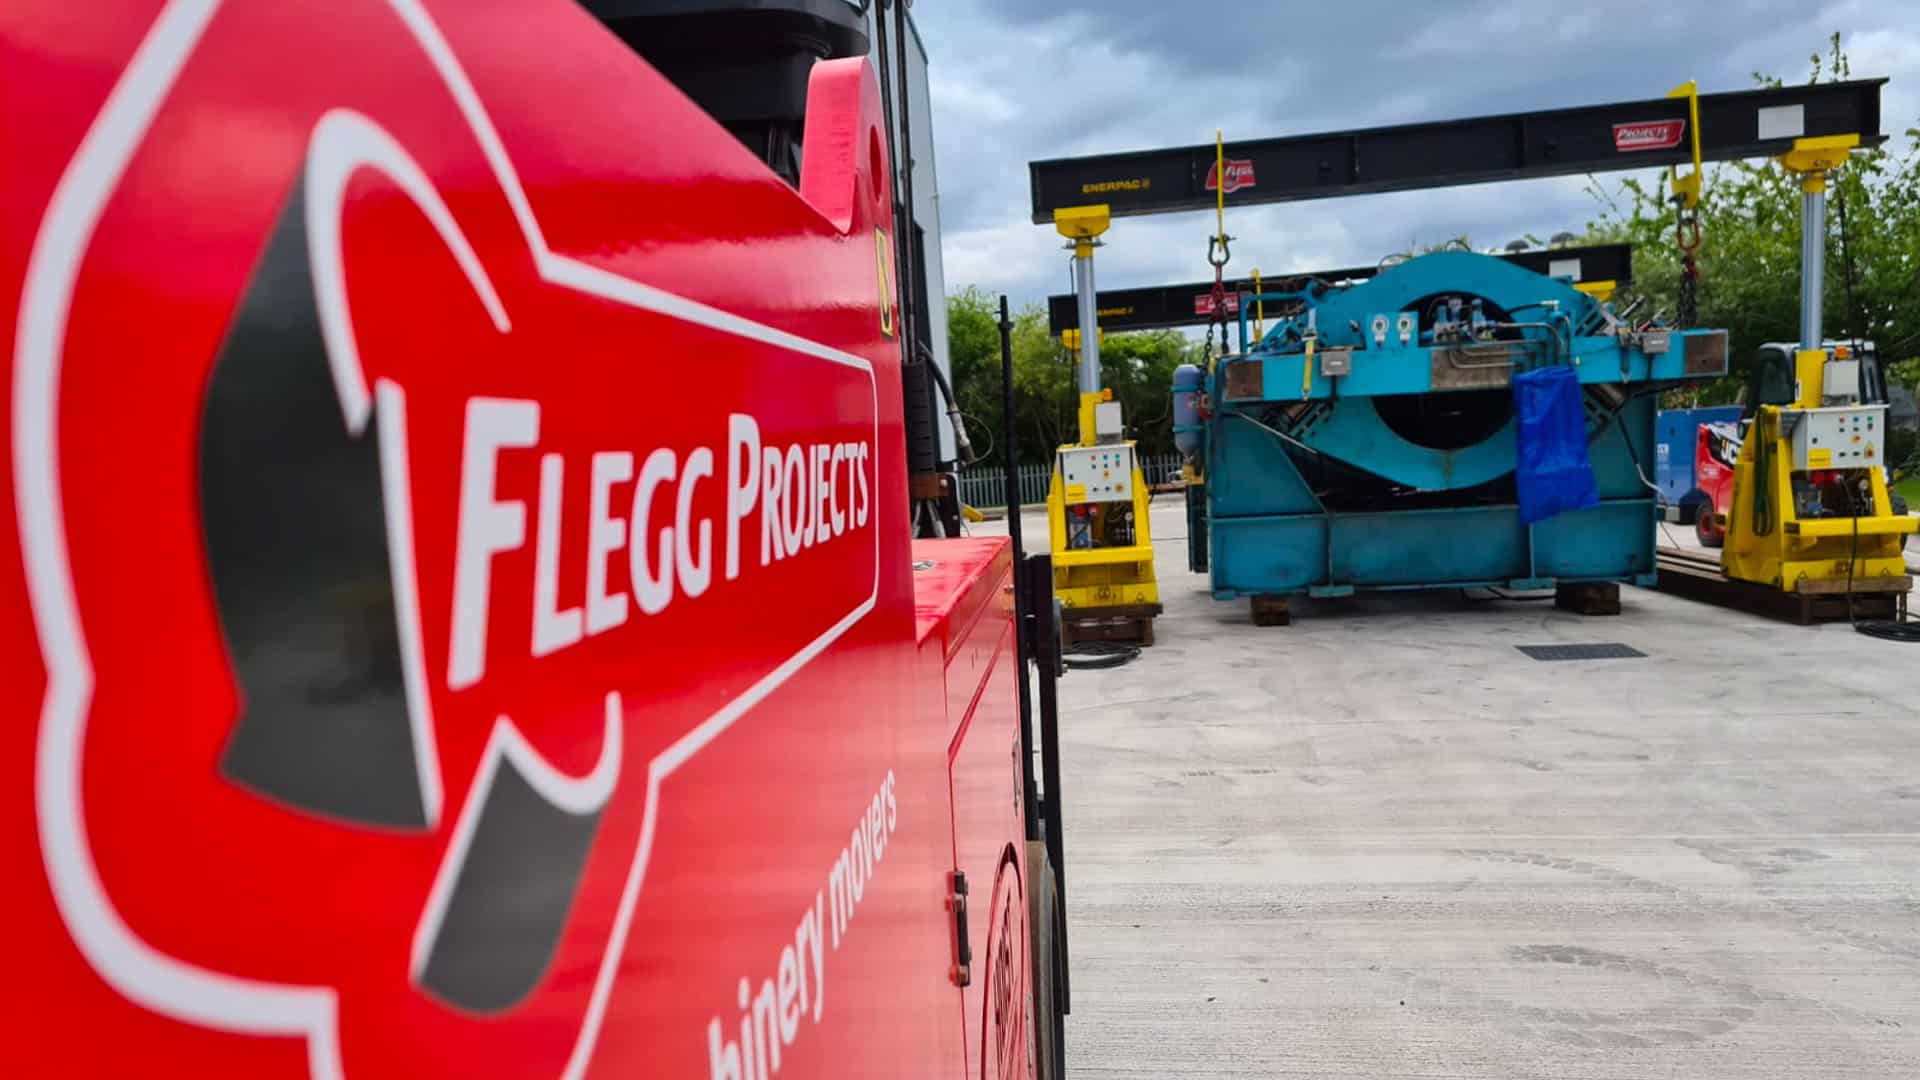 Flegg logo on side of vehicle